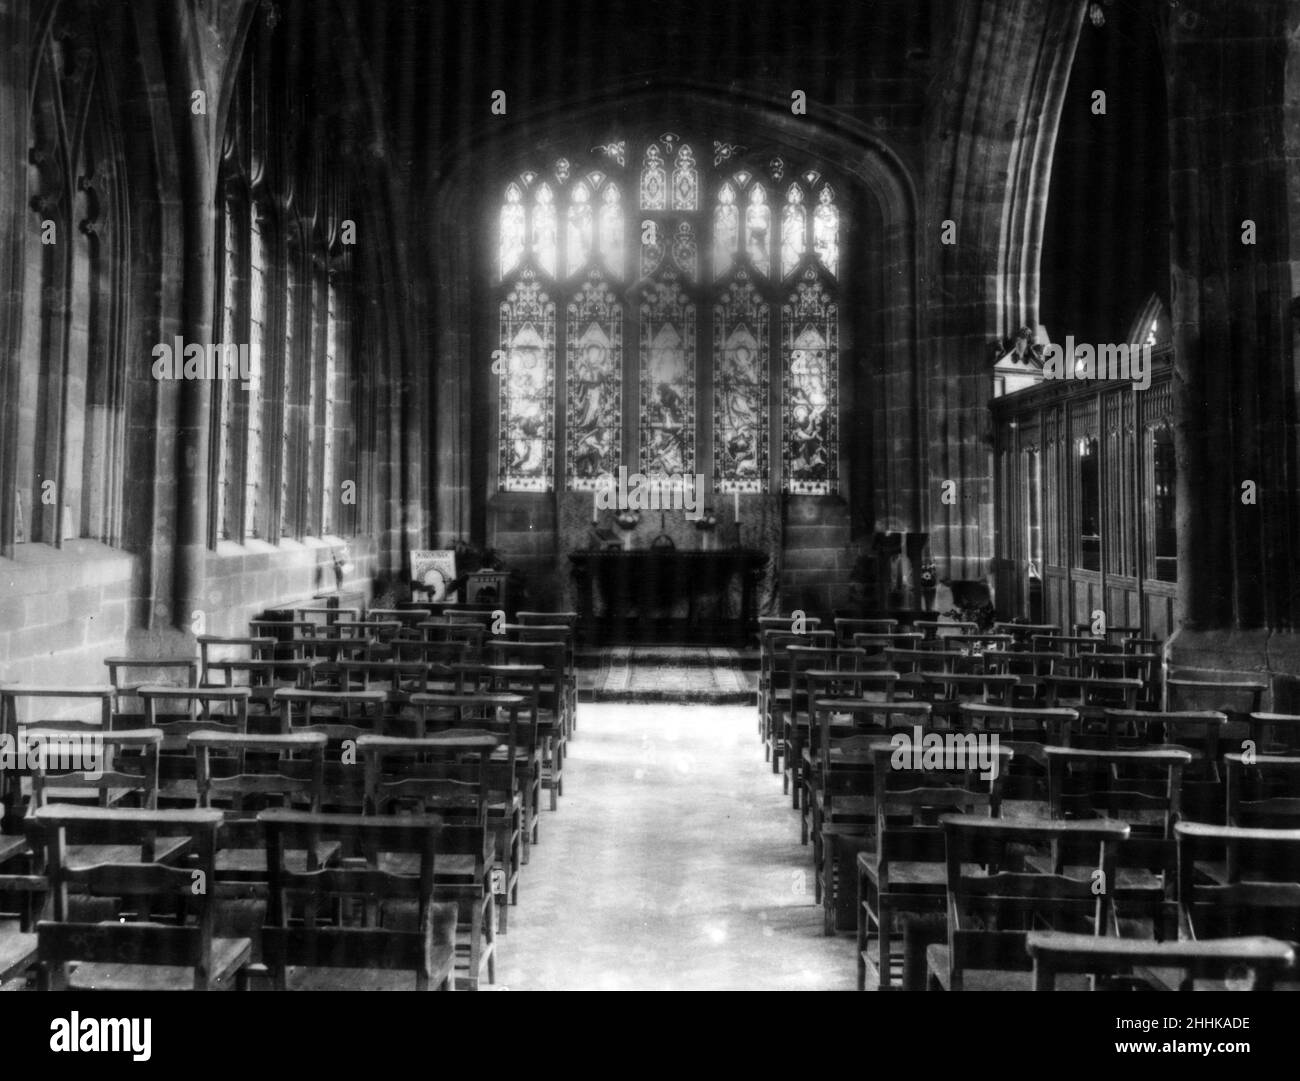 Cattedrale di Coventry, Chiesa Cattedrale di San Michele, prima che fosse danneggiata durante il Blitz di Coventry. Interno della cattedrale rivolto a nord. Data sconosciuta. Foto Stock